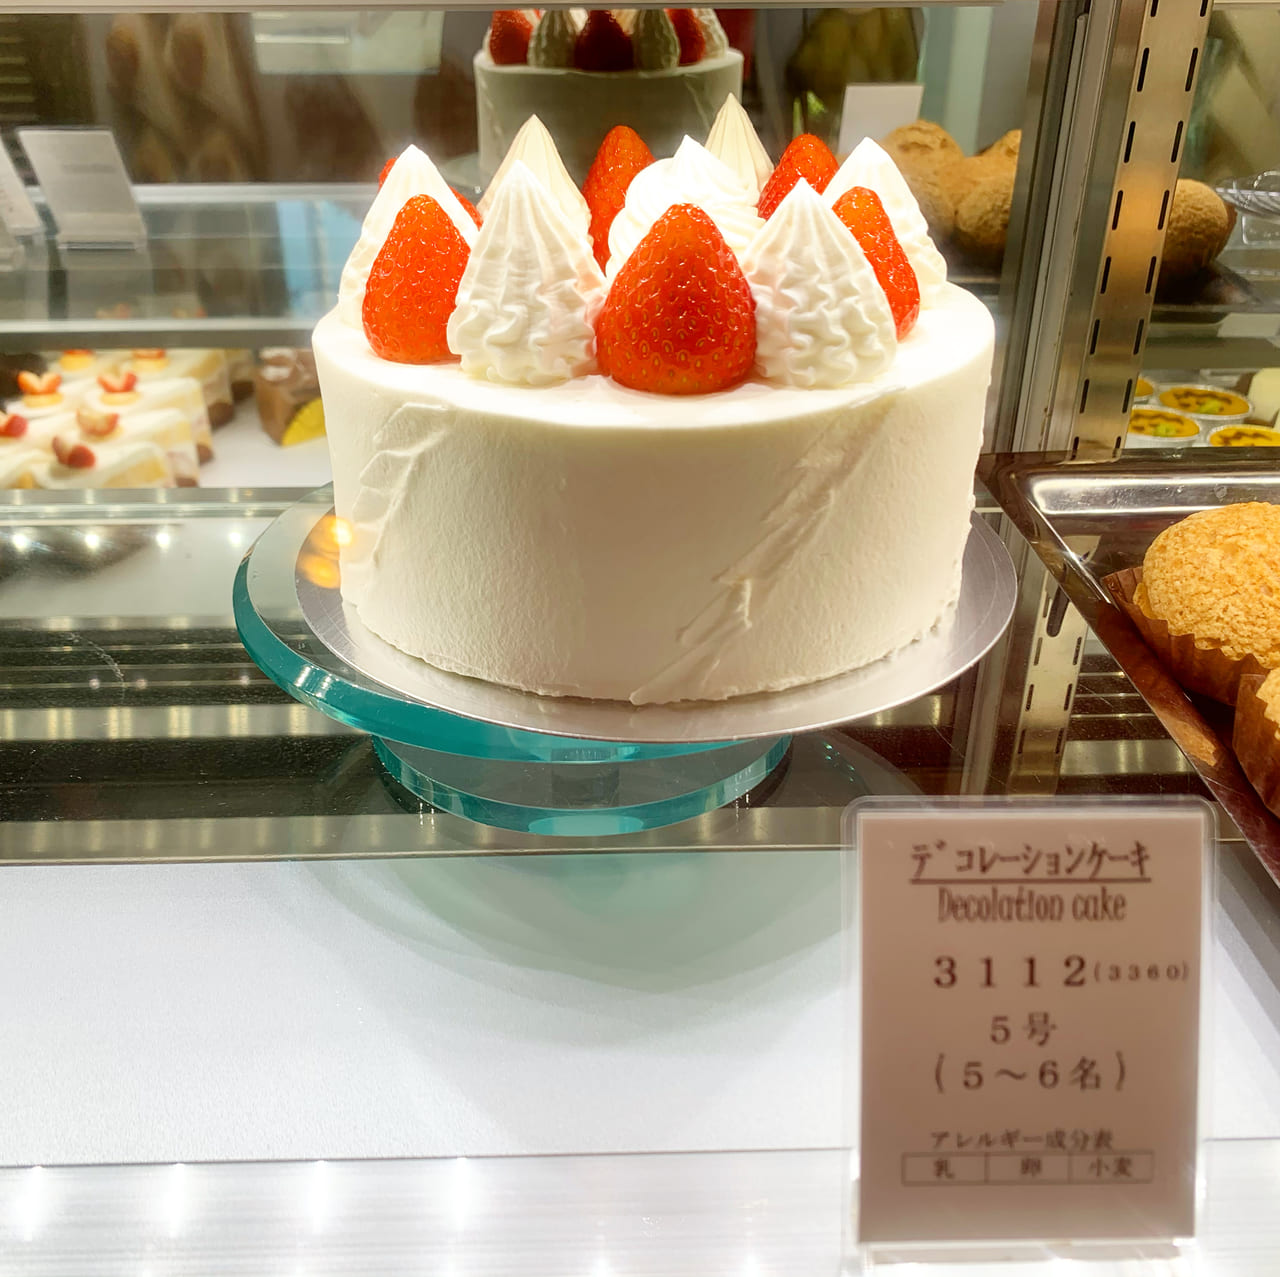 神戸市垂水区 須磨区 バタフライエフェクトのケーキが垂水で話題 インスタではジェラート情報も 号外net 神戸市垂水区 須磨区